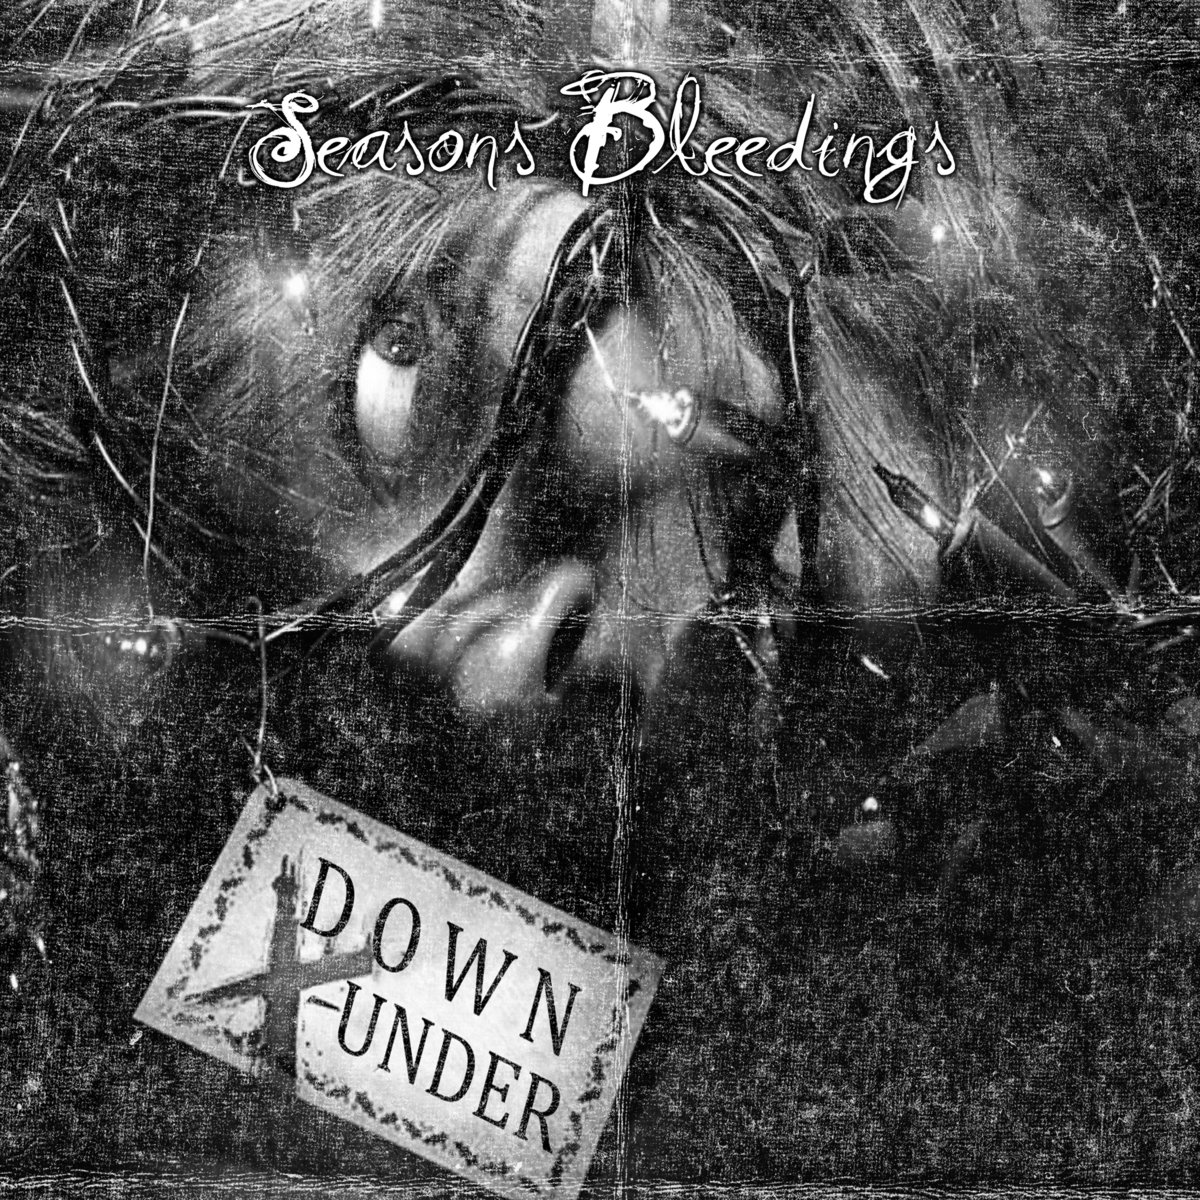 DOWN UNDER - Seasons Bleedings cover 